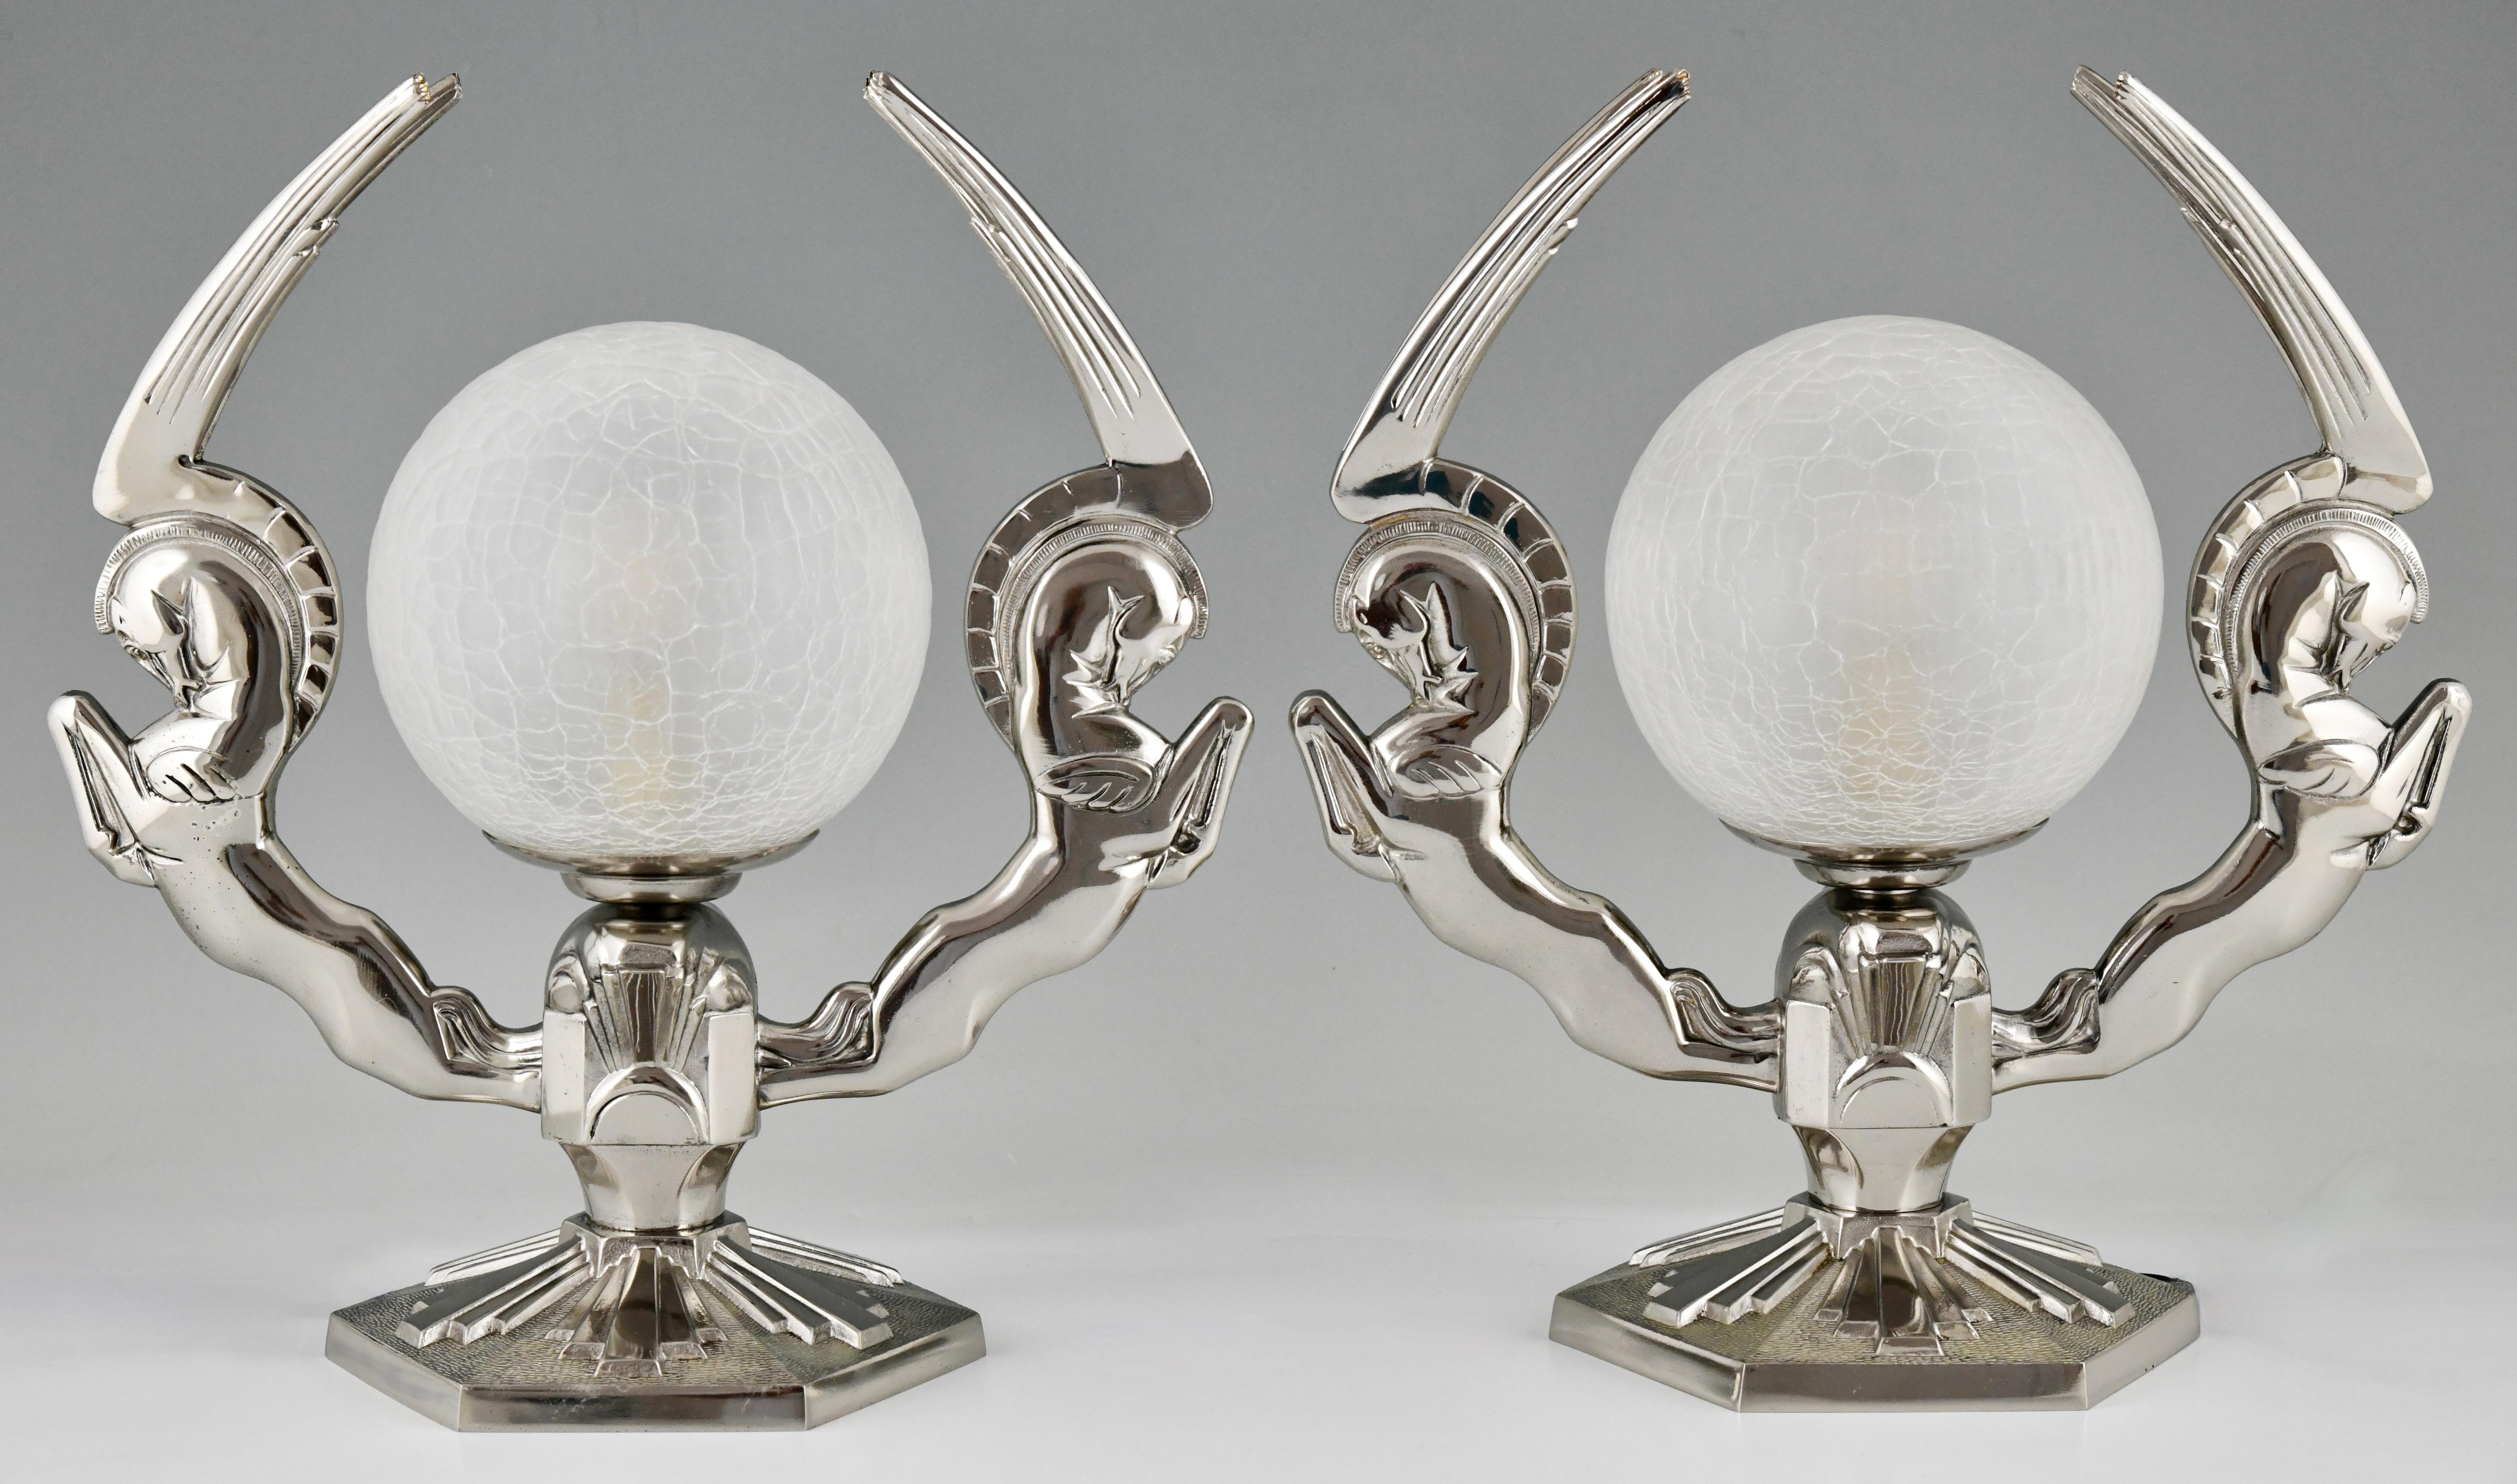 Paar Pegasus-Lampen aus Bronze im Art Deco-Stil, geflügelte Pferde. 
Signiert Paris Star, markiert Made in France. 
Bronze mit silberner Patina.
Weltkugel aus Crackle-Glas. 
Frankreich 1925. 